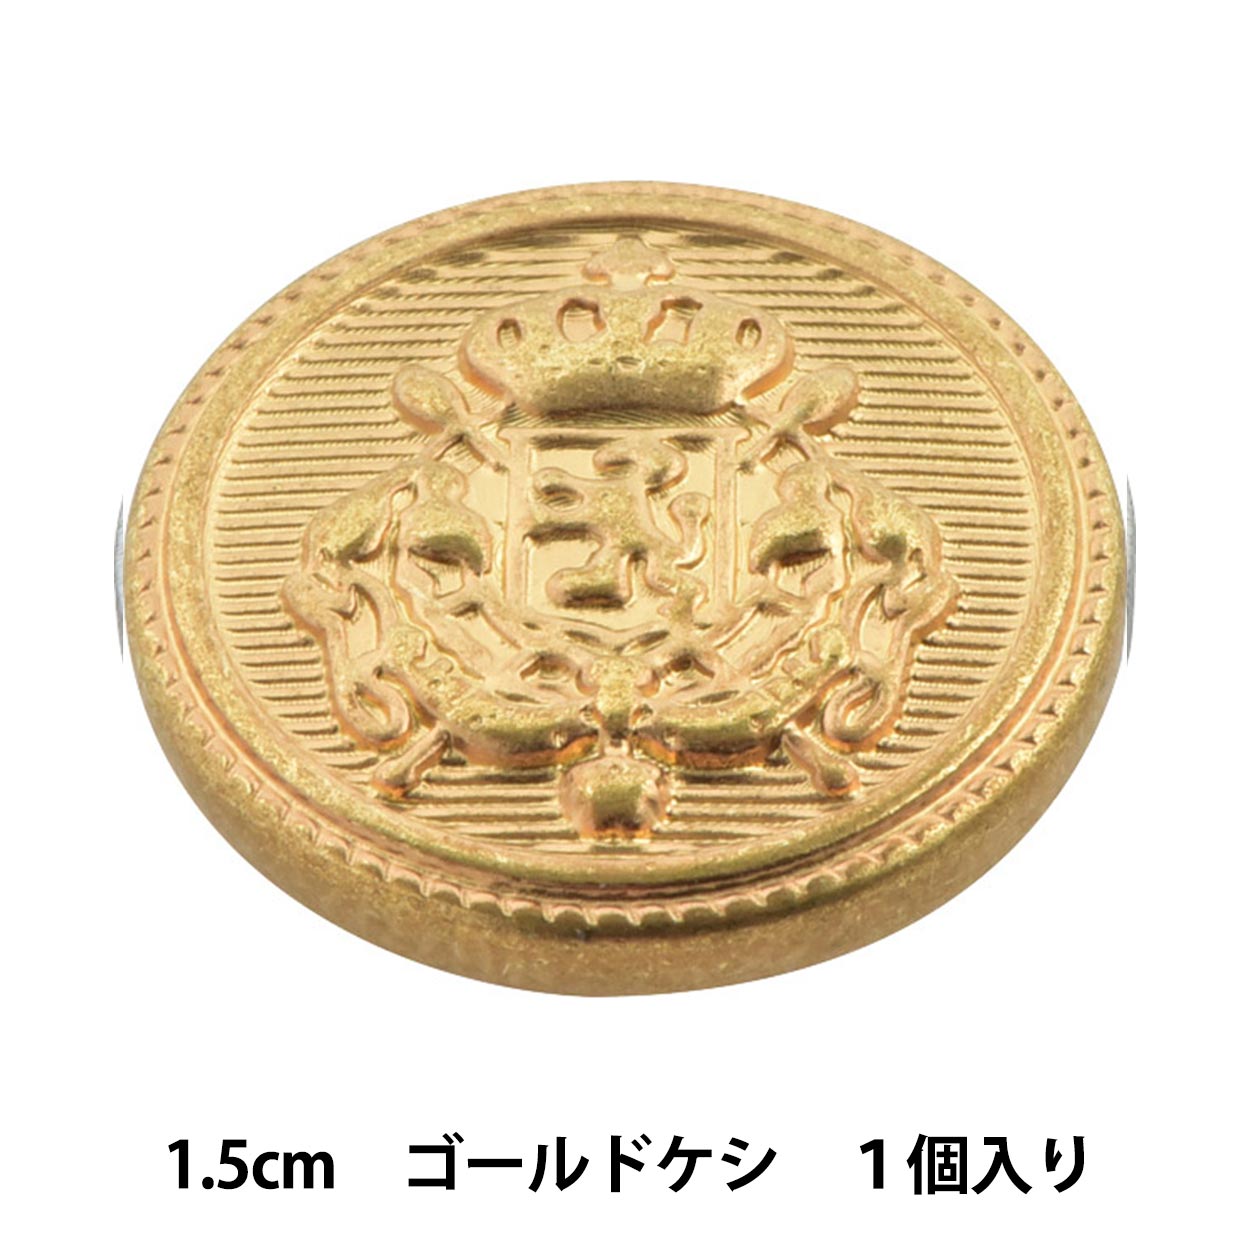 ボタン 『メタル 真鍮ボタン 1.5cm GG 